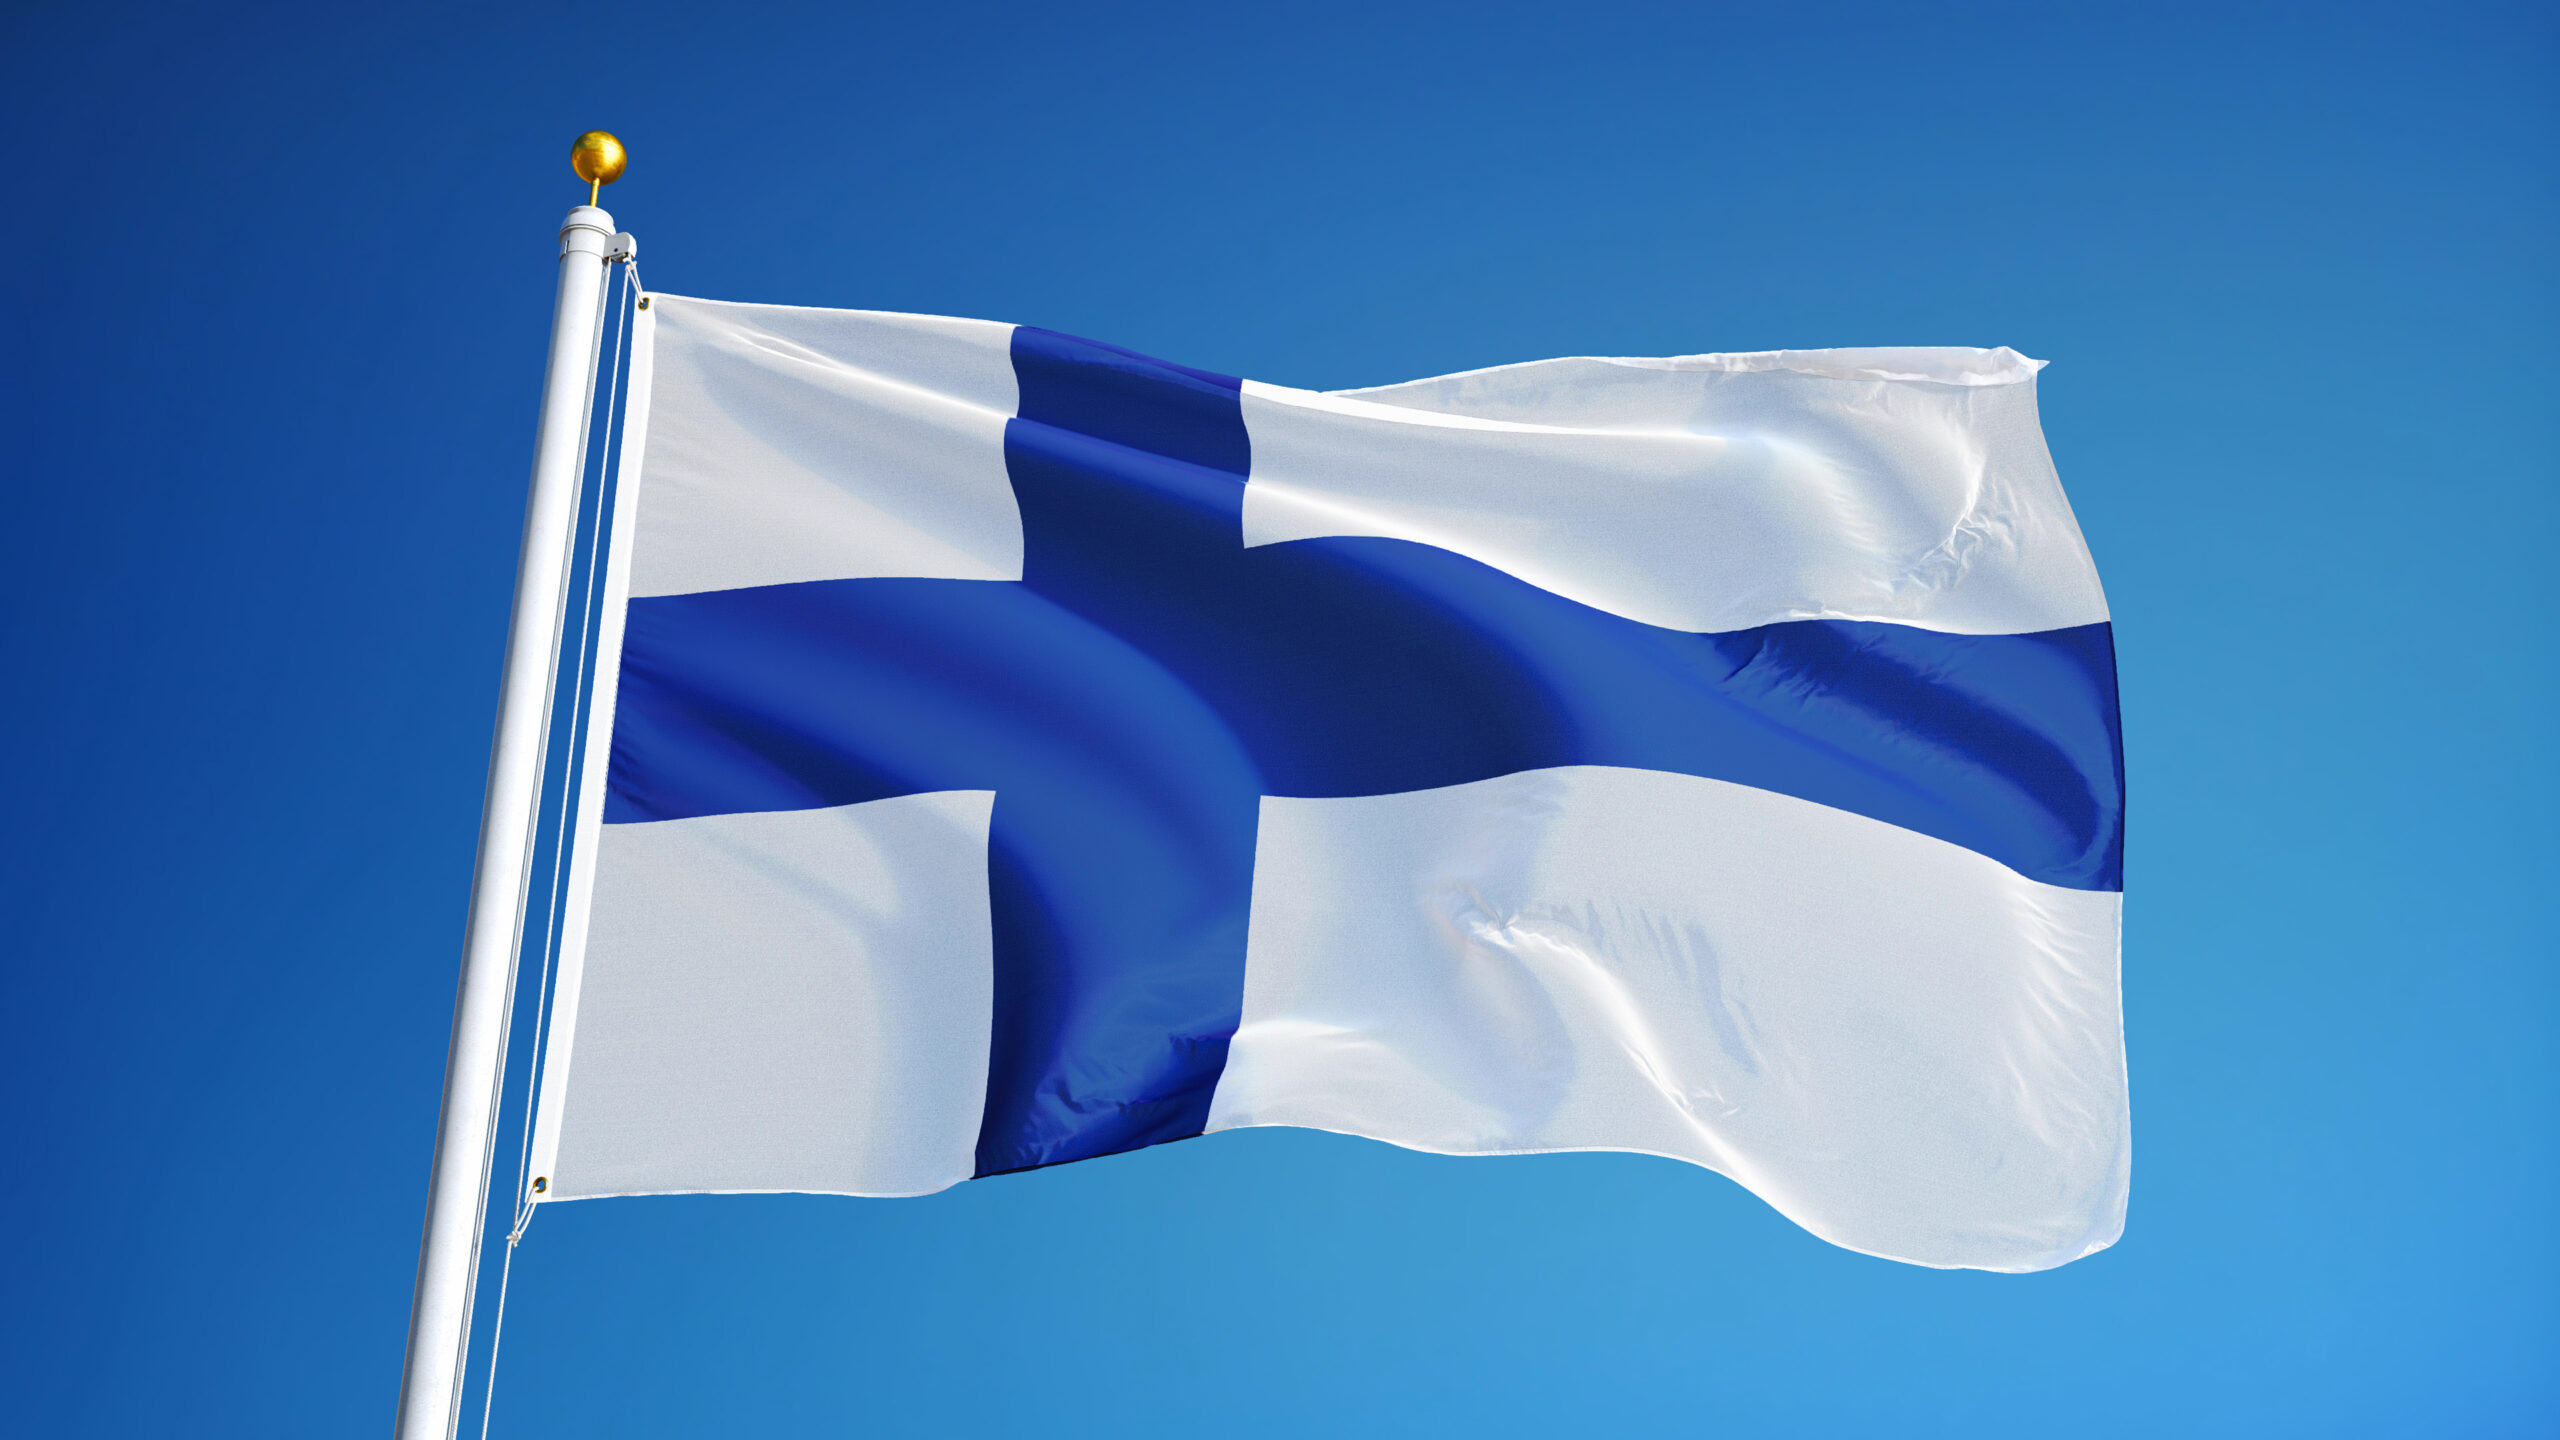 Advenica får order värd 2,1 MSEK från finsk myndighet